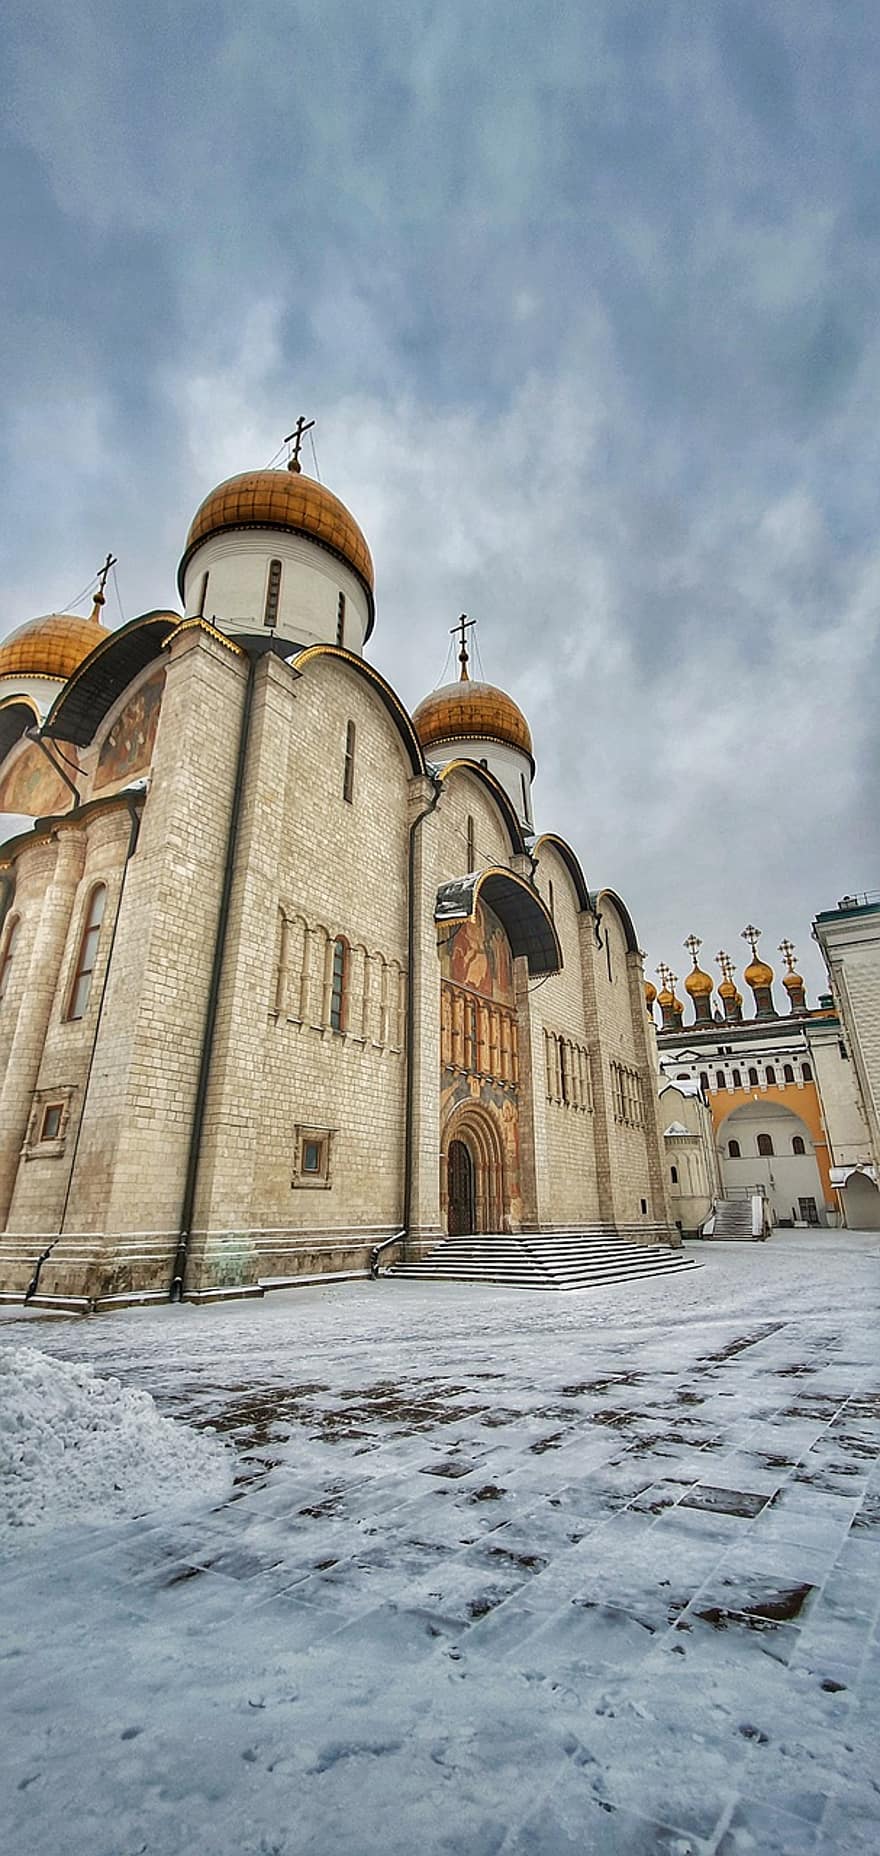 nhà thờ, xây dựng, moscow, kremlin, Nga, cũ, ngành kiến ​​trúc, sự thánh thiện, tôn giáo, các nền văn hóa, nơi nổi tiếng